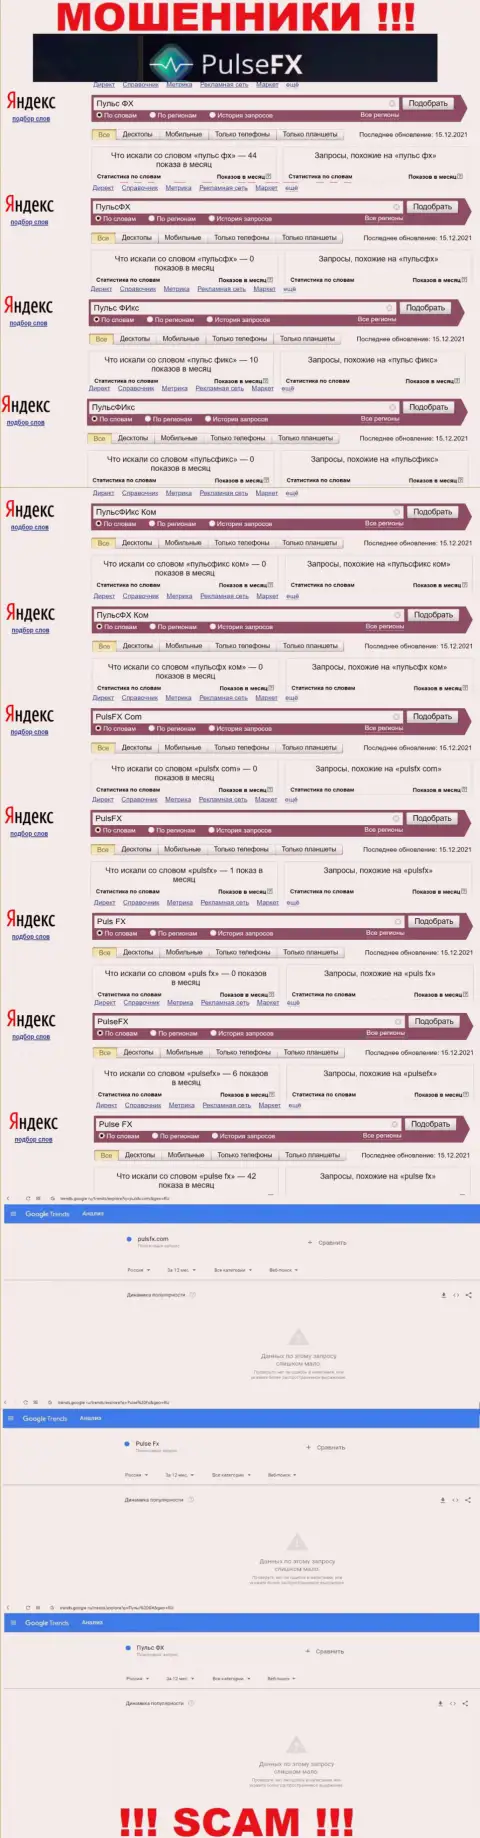 Количество онлайн запросов в глобальной сети интернет по бренду мошенников PulseFX